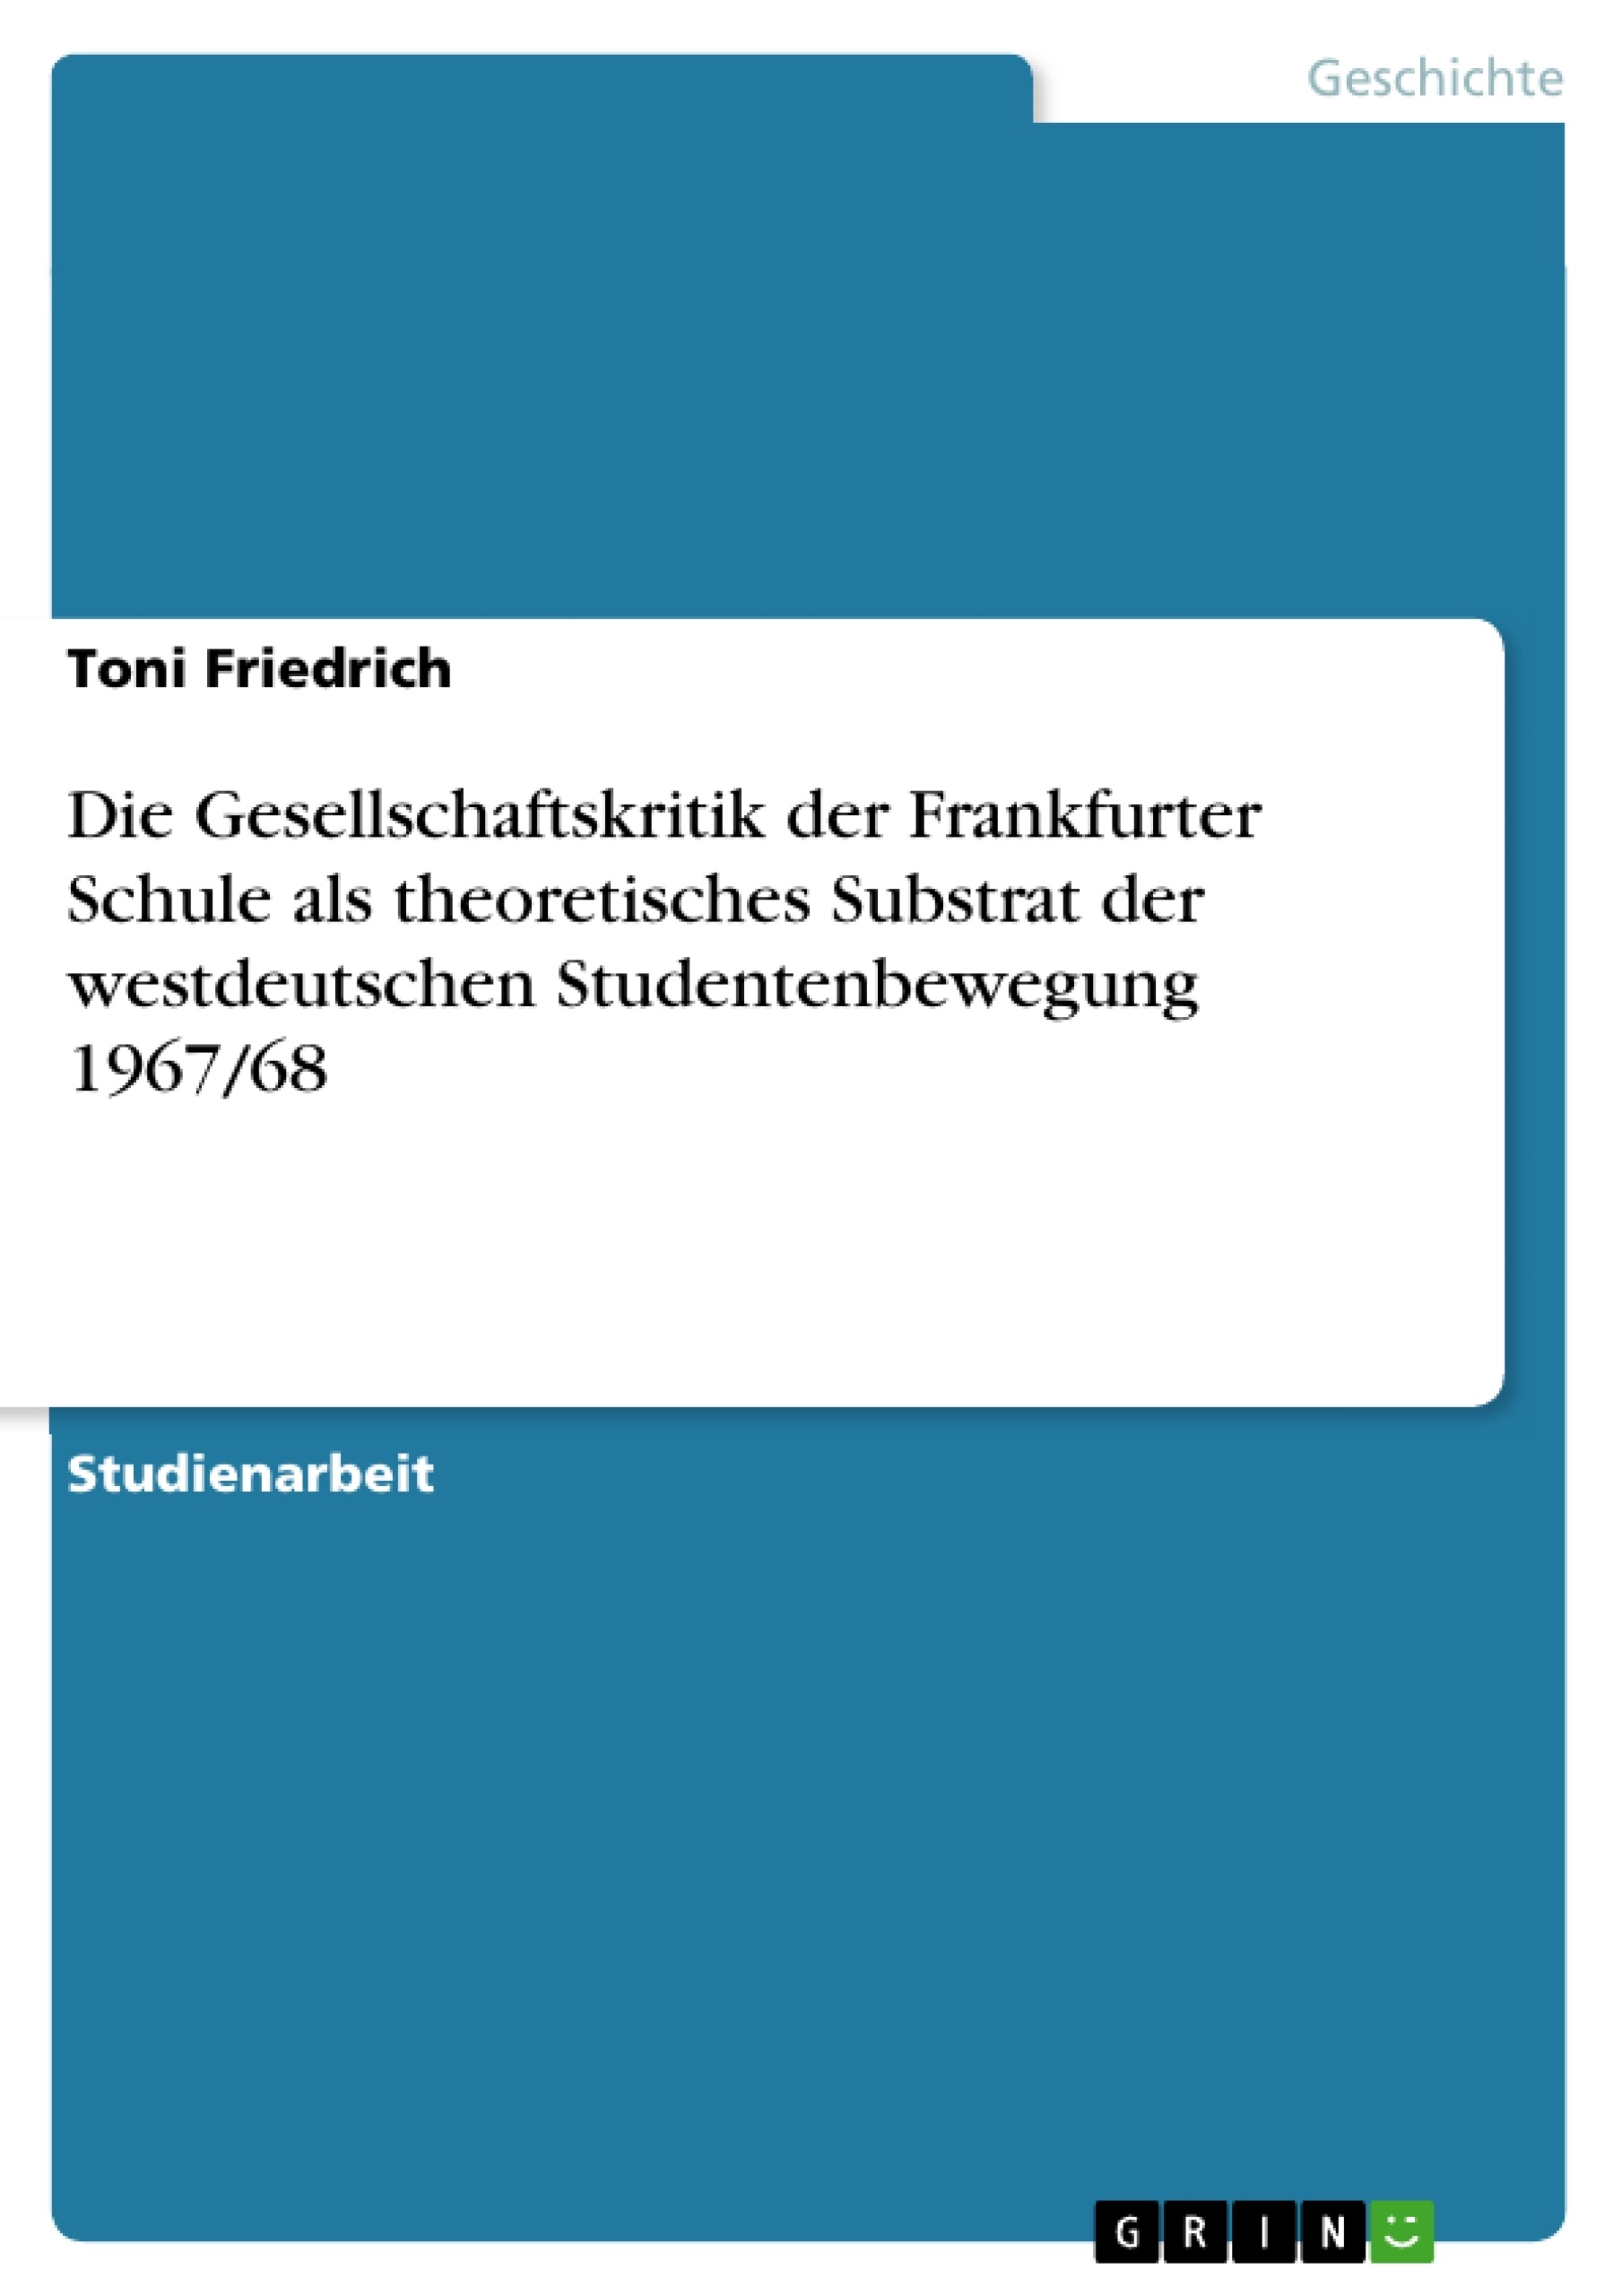 Titre: Die Gesellschaftskritik der Frankfurter Schule als theoretisches Substrat der westdeutschen Studentenbewegung 1967/68